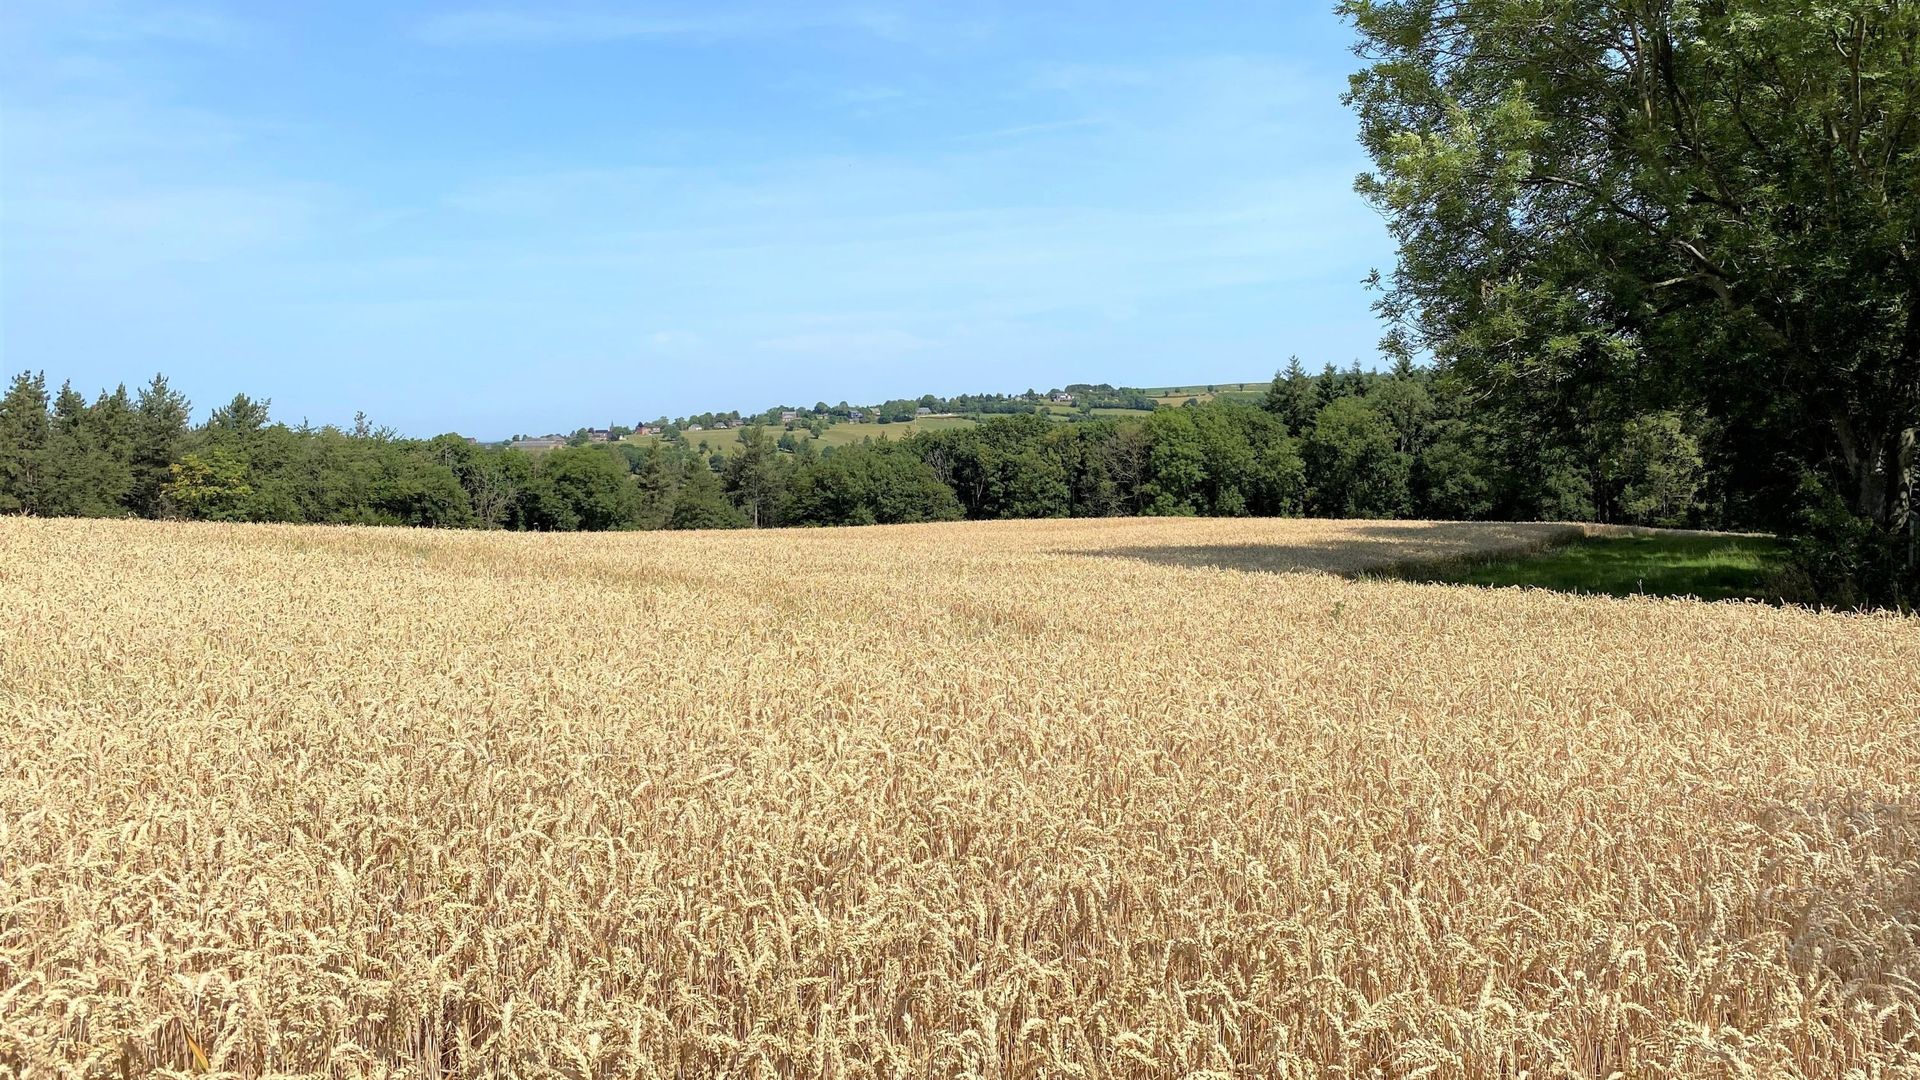 Ce champ de huit hectares situé à Neufchâteau, commune de Dalhem, fait l’objet d’une expérience d’agriculture régénérative menée par les "Moulins du Val-Dieu" pour produire un blé de qualité tout en préservant l’environnement.